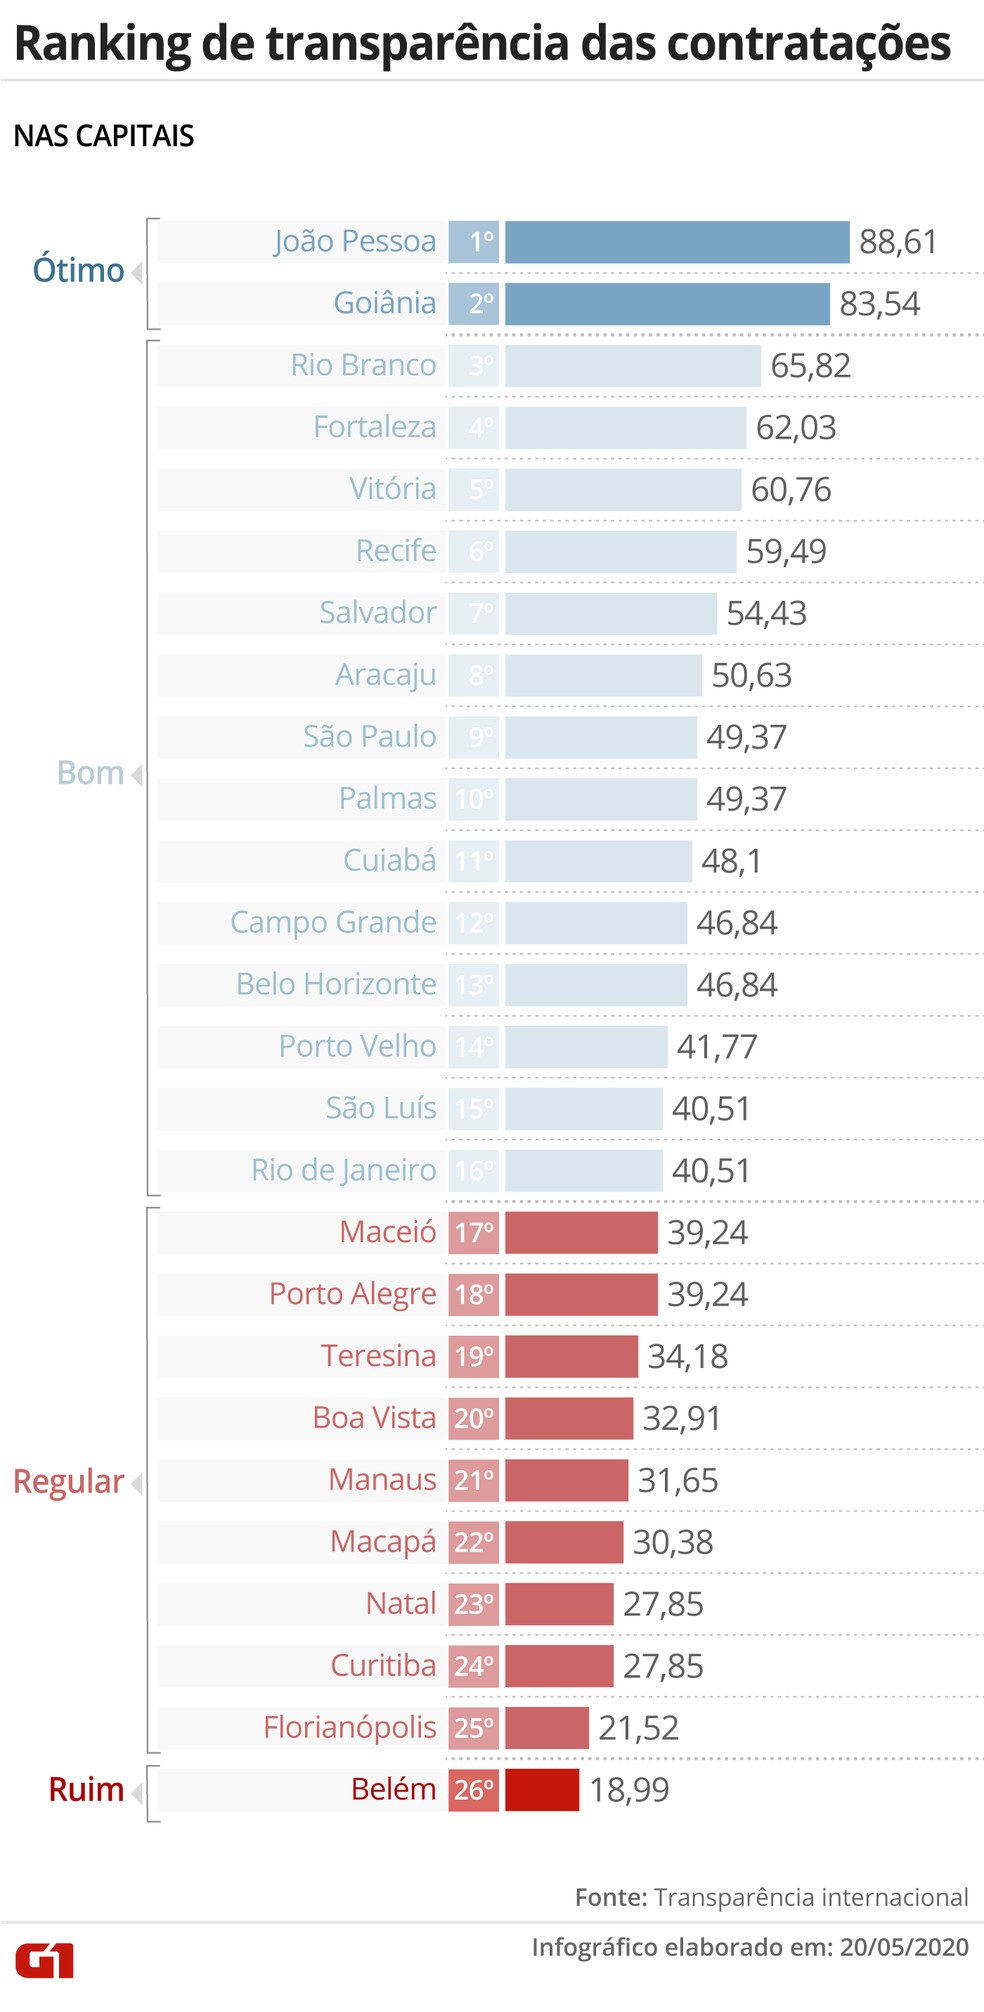 Ranking de transparncia das prefeituras das capitais nas contrataes emergenciais durante a pandemia da Covid-19 feito pela Transparncia Internacional  Foto: Aparecido Gonalves/G1